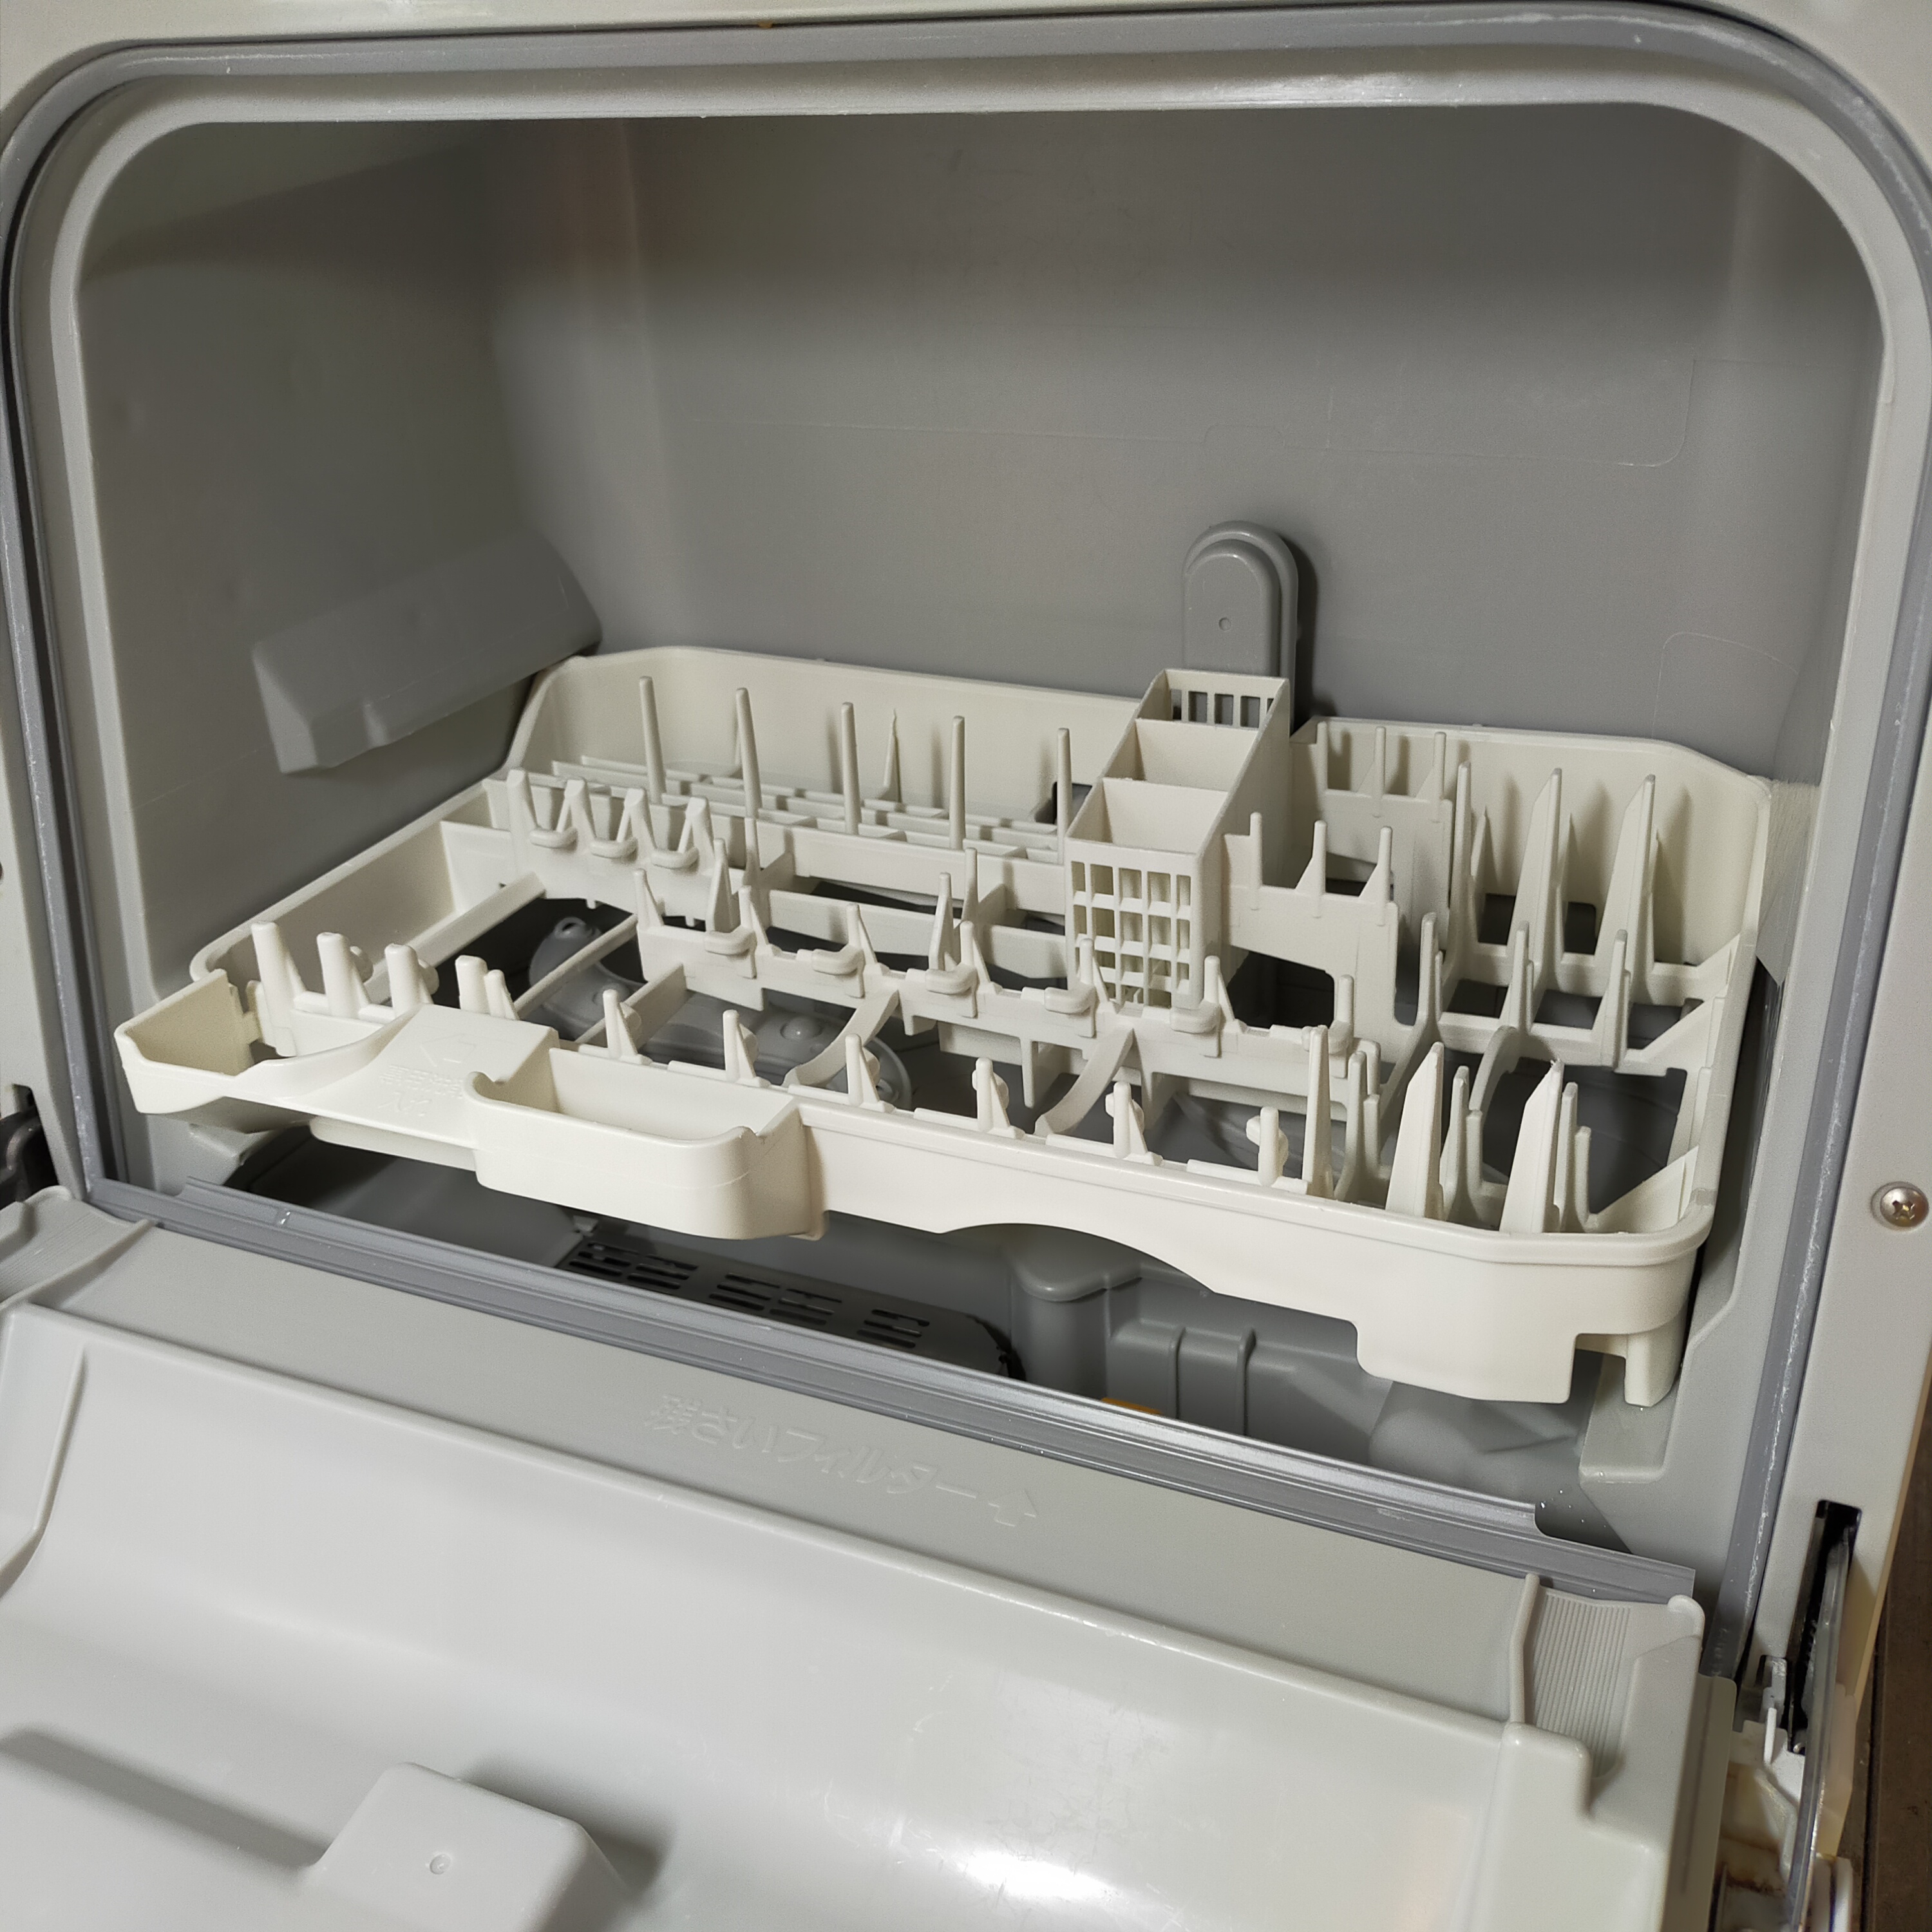 Panasonic(パナソニック)食器洗い乾燥機 NP-TCR3-W(ホワイト)を使ったCHISa0さんのクチコミ画像2